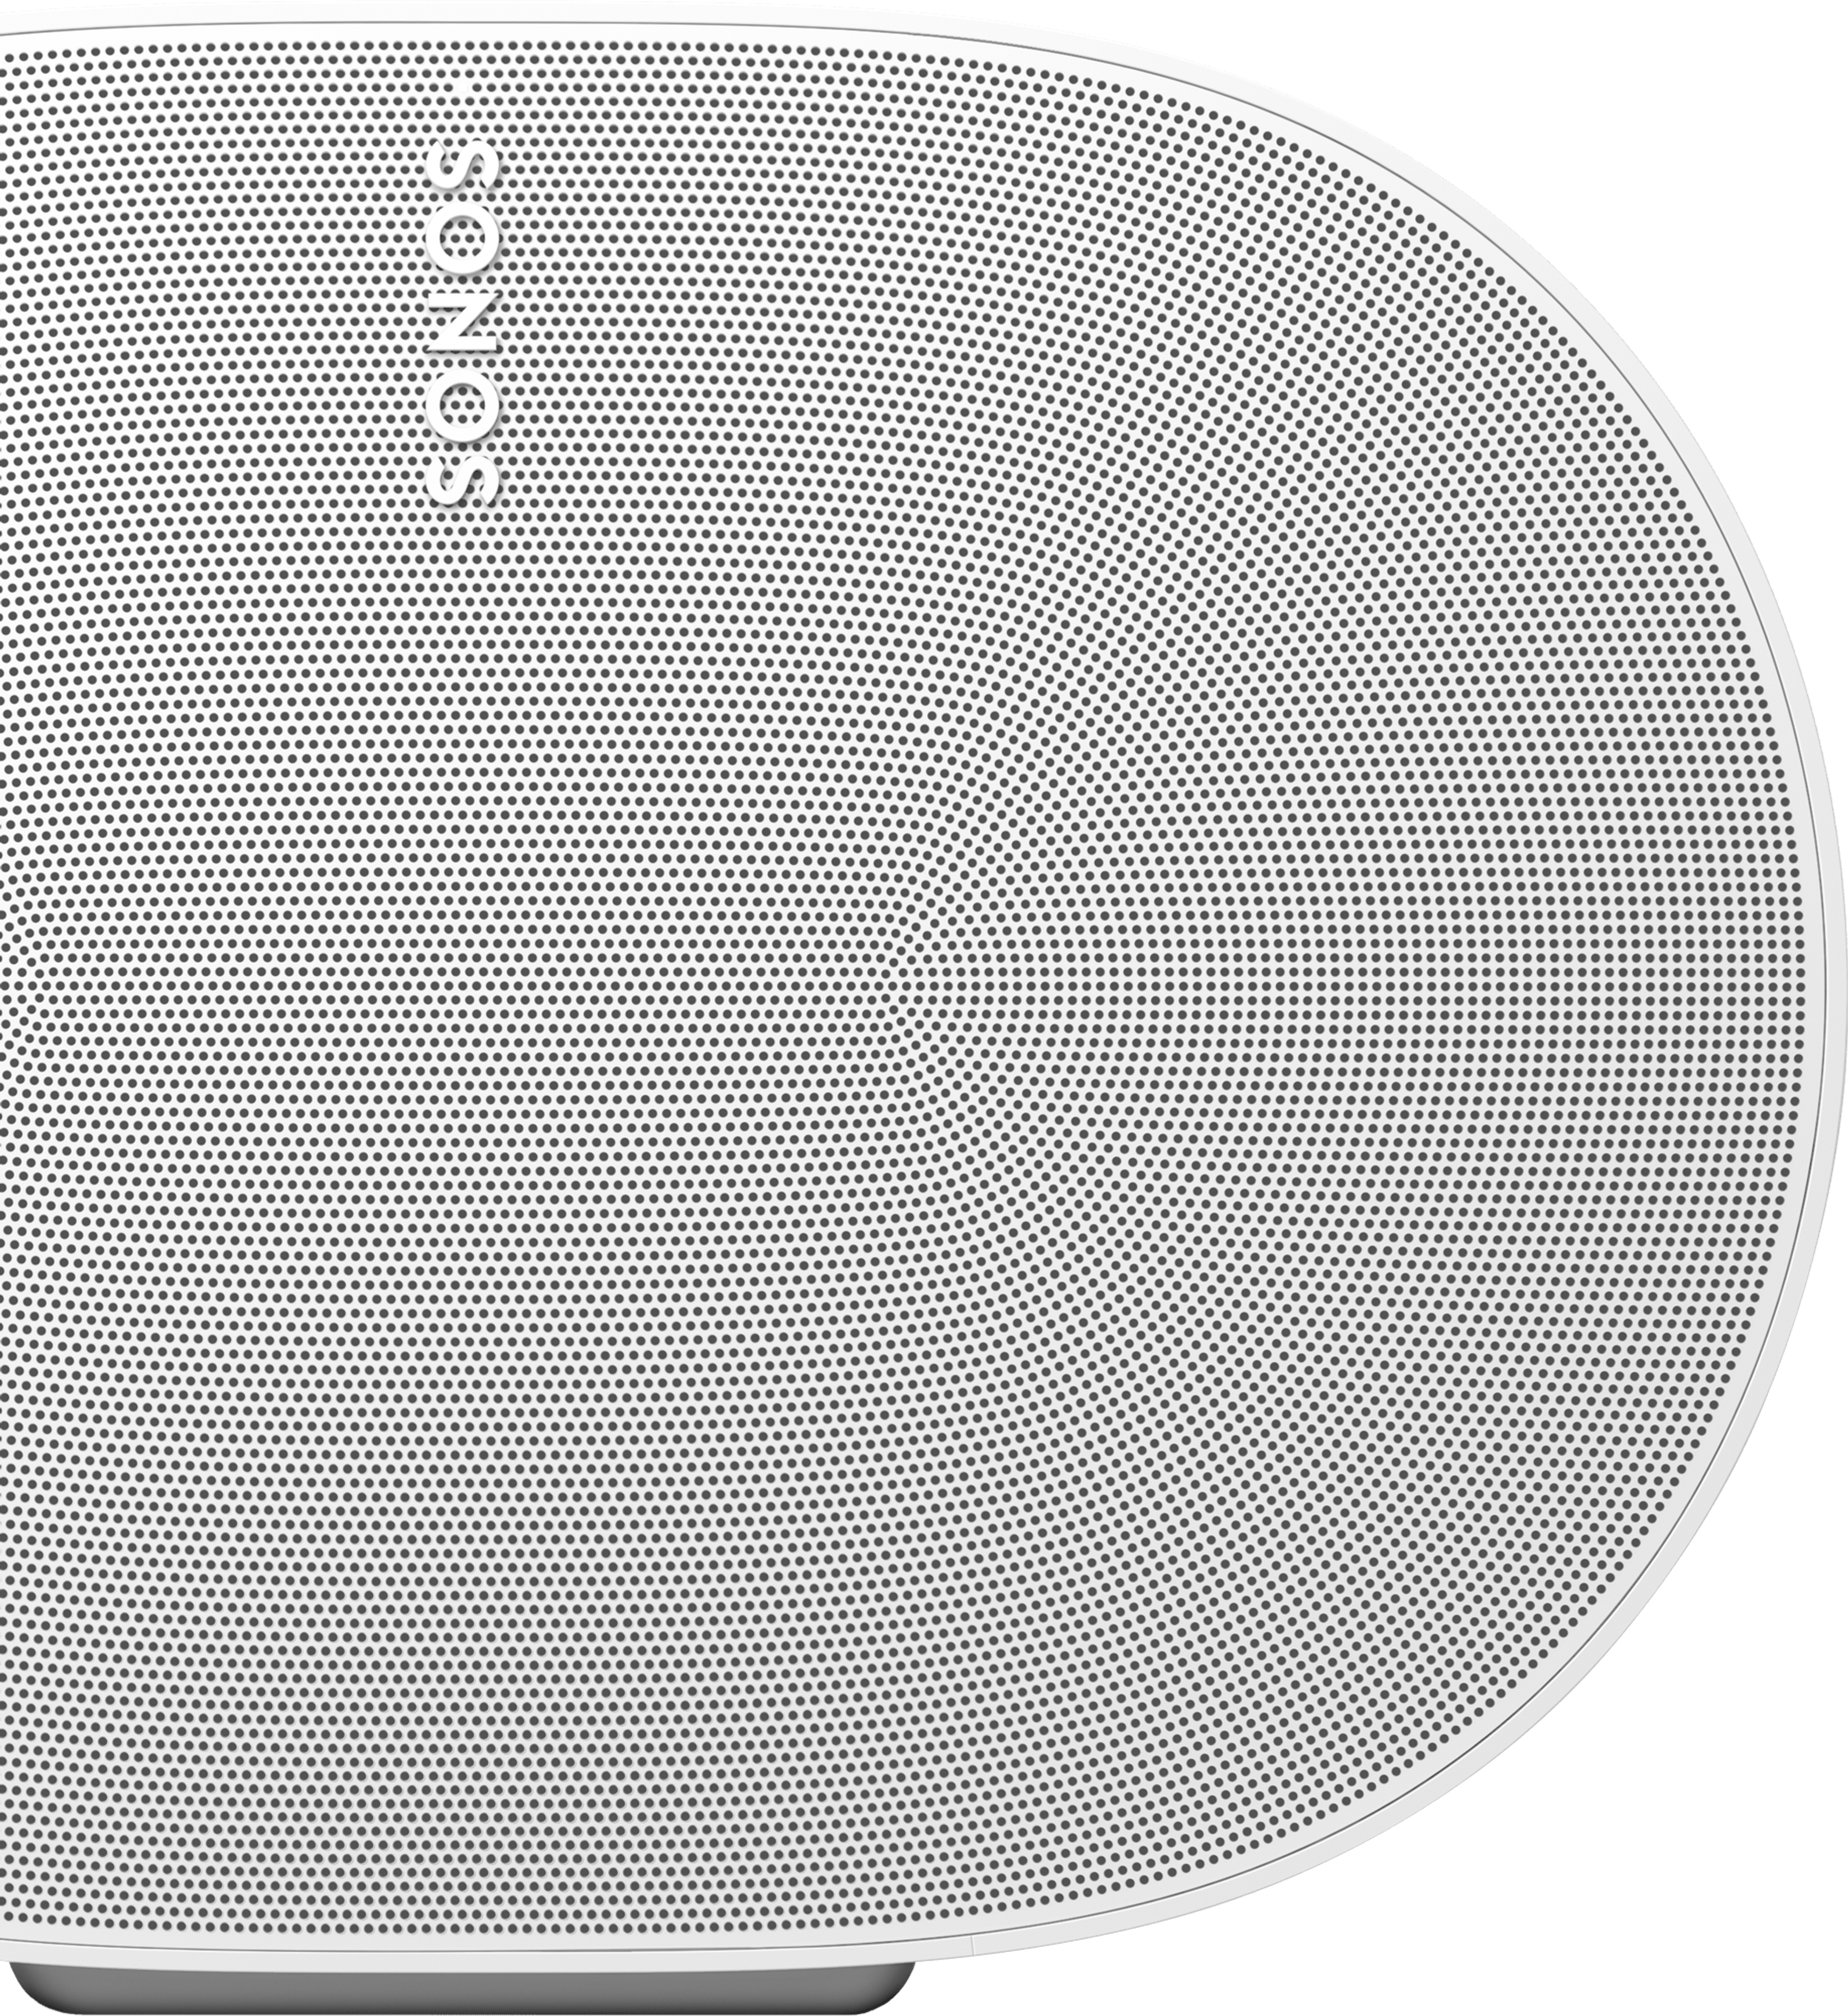 Primer plano frontal de un parlante Sonos Era 300 en blanco